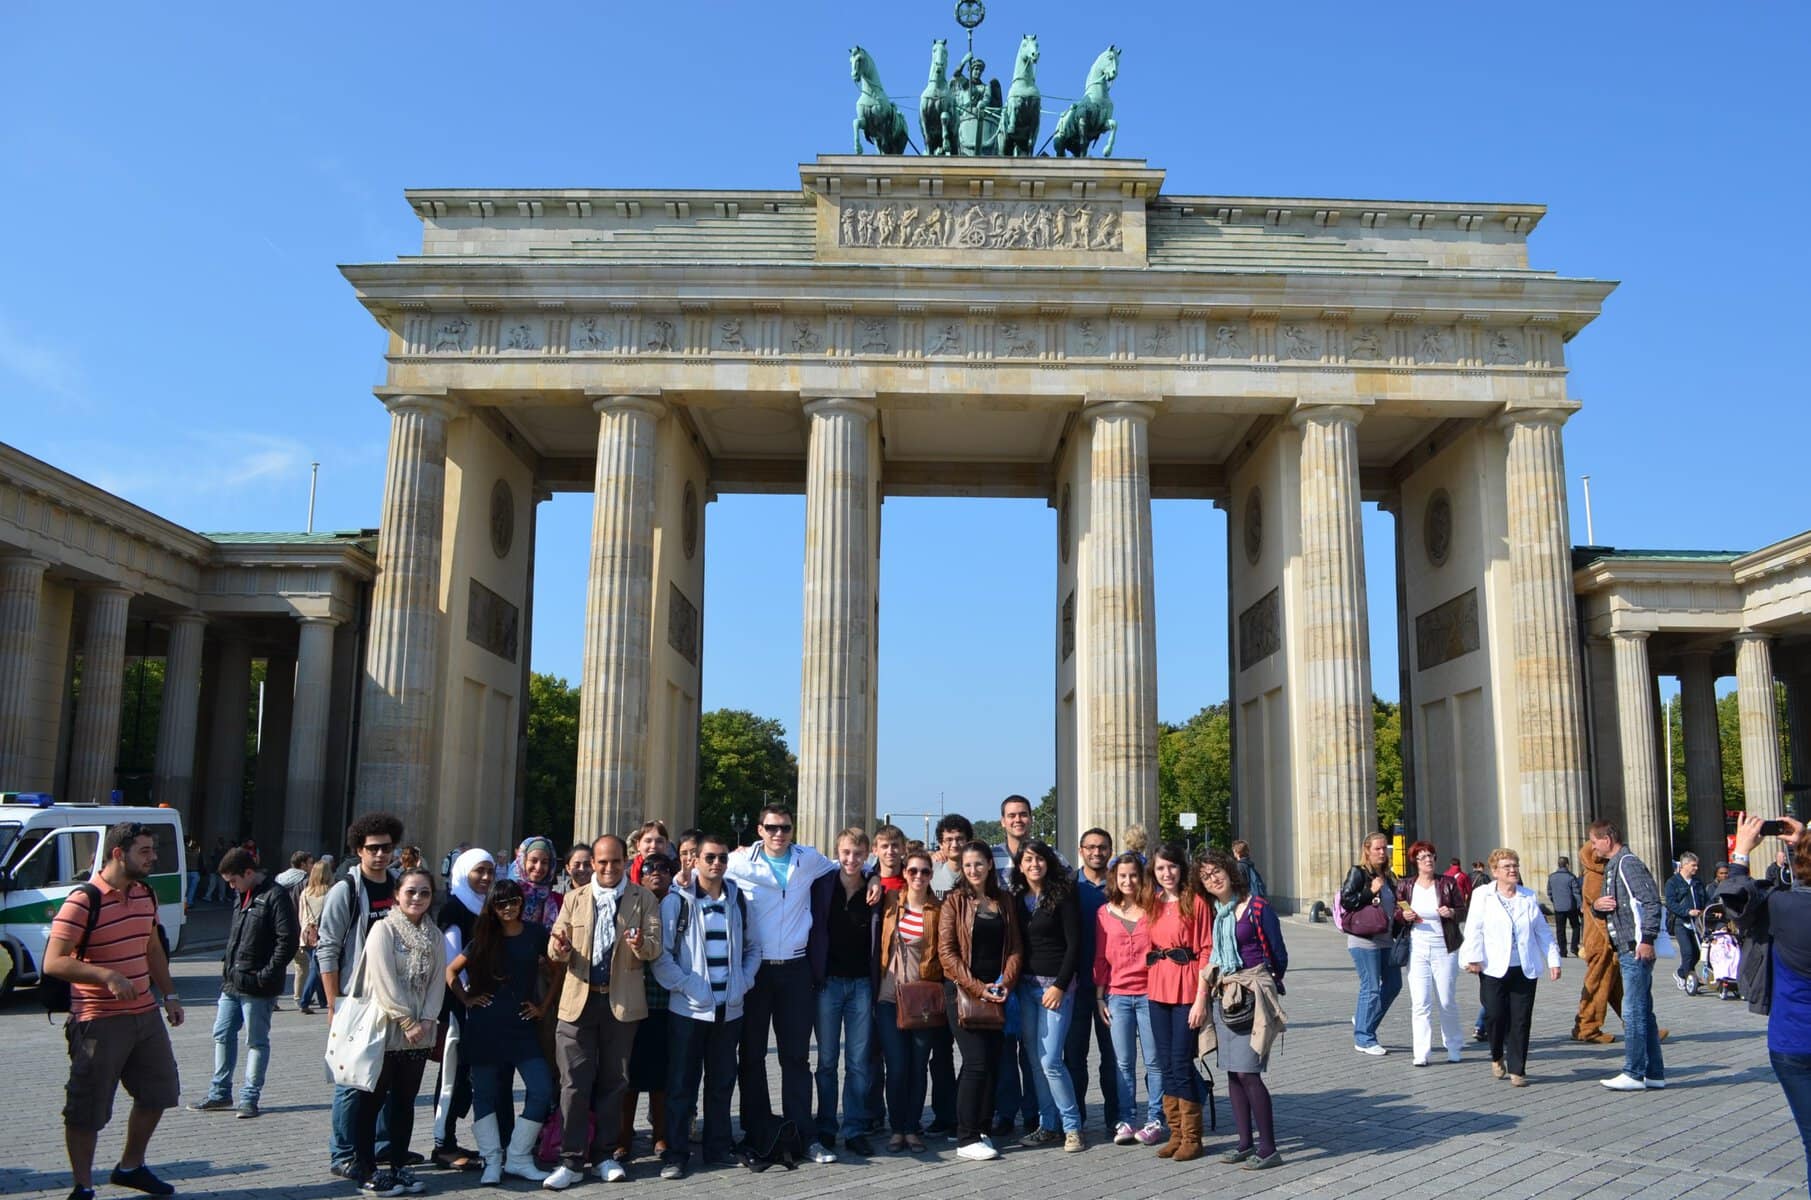 Sprachschüler aus Aachen im Sommer 2011 am Brandenburger Tor, Berlin